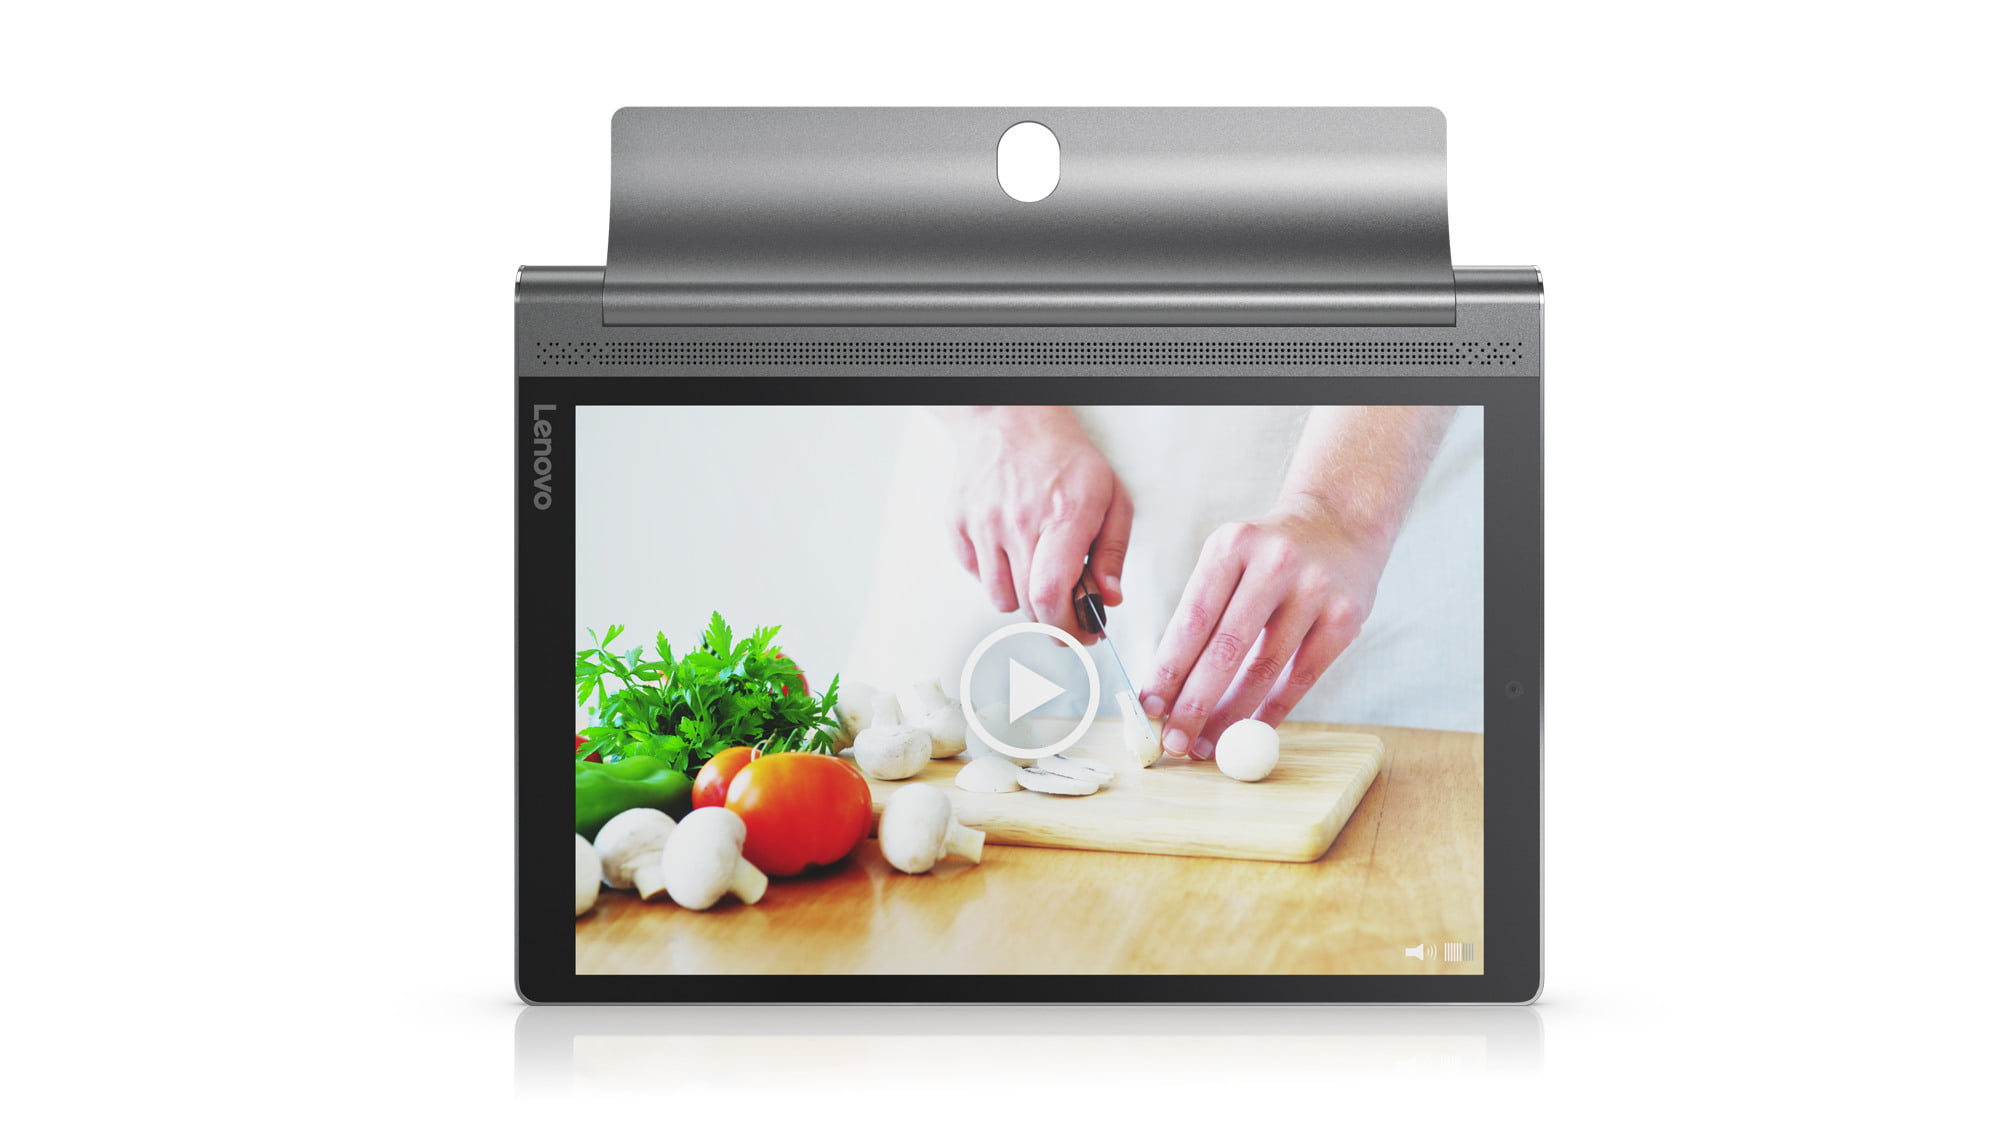 Lenovo Yoga Tab 3 Plus Tablet - Walmart.com